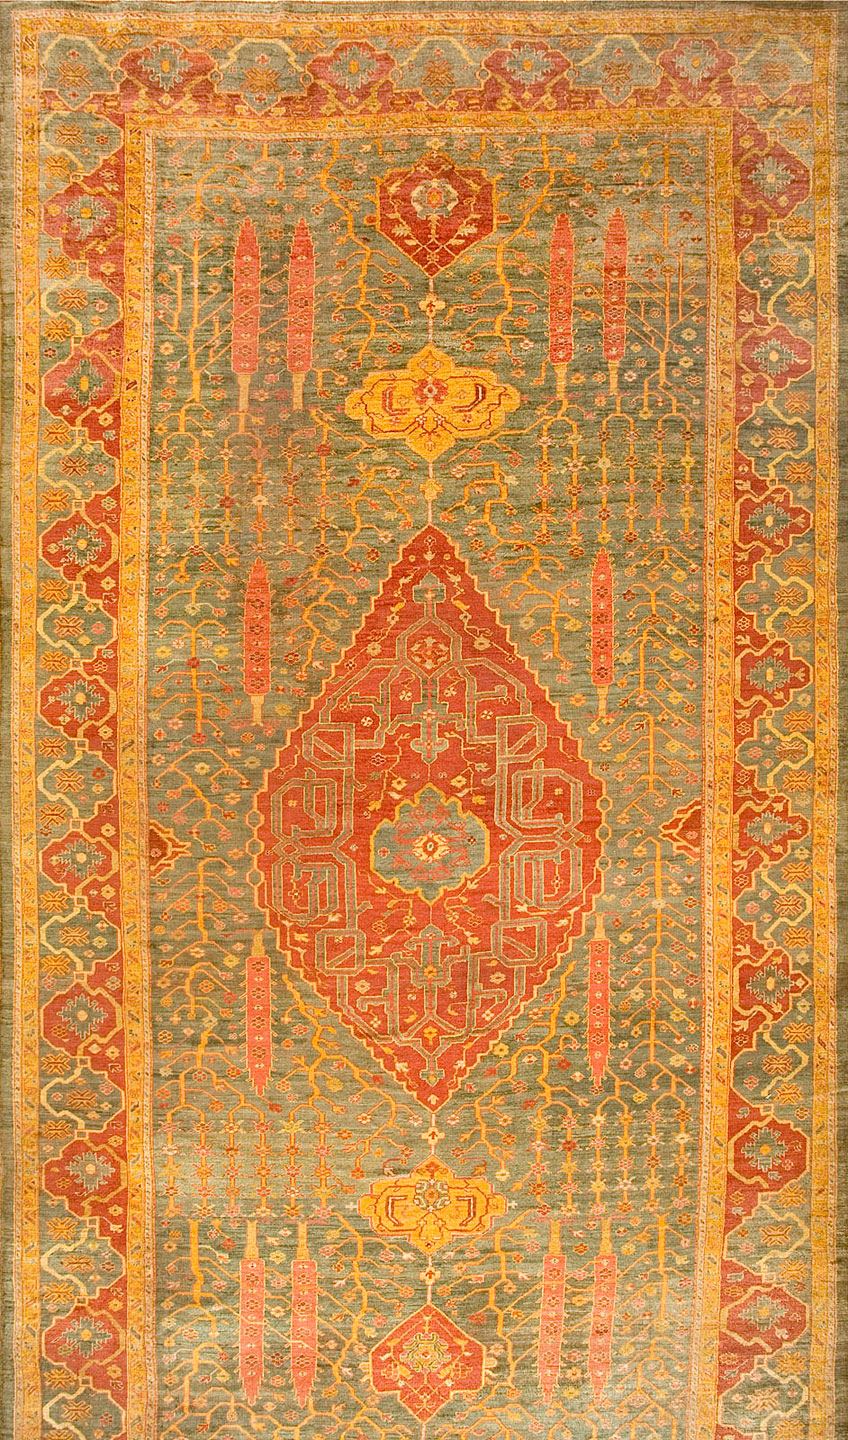 Antique oushak Carpet - # 8698